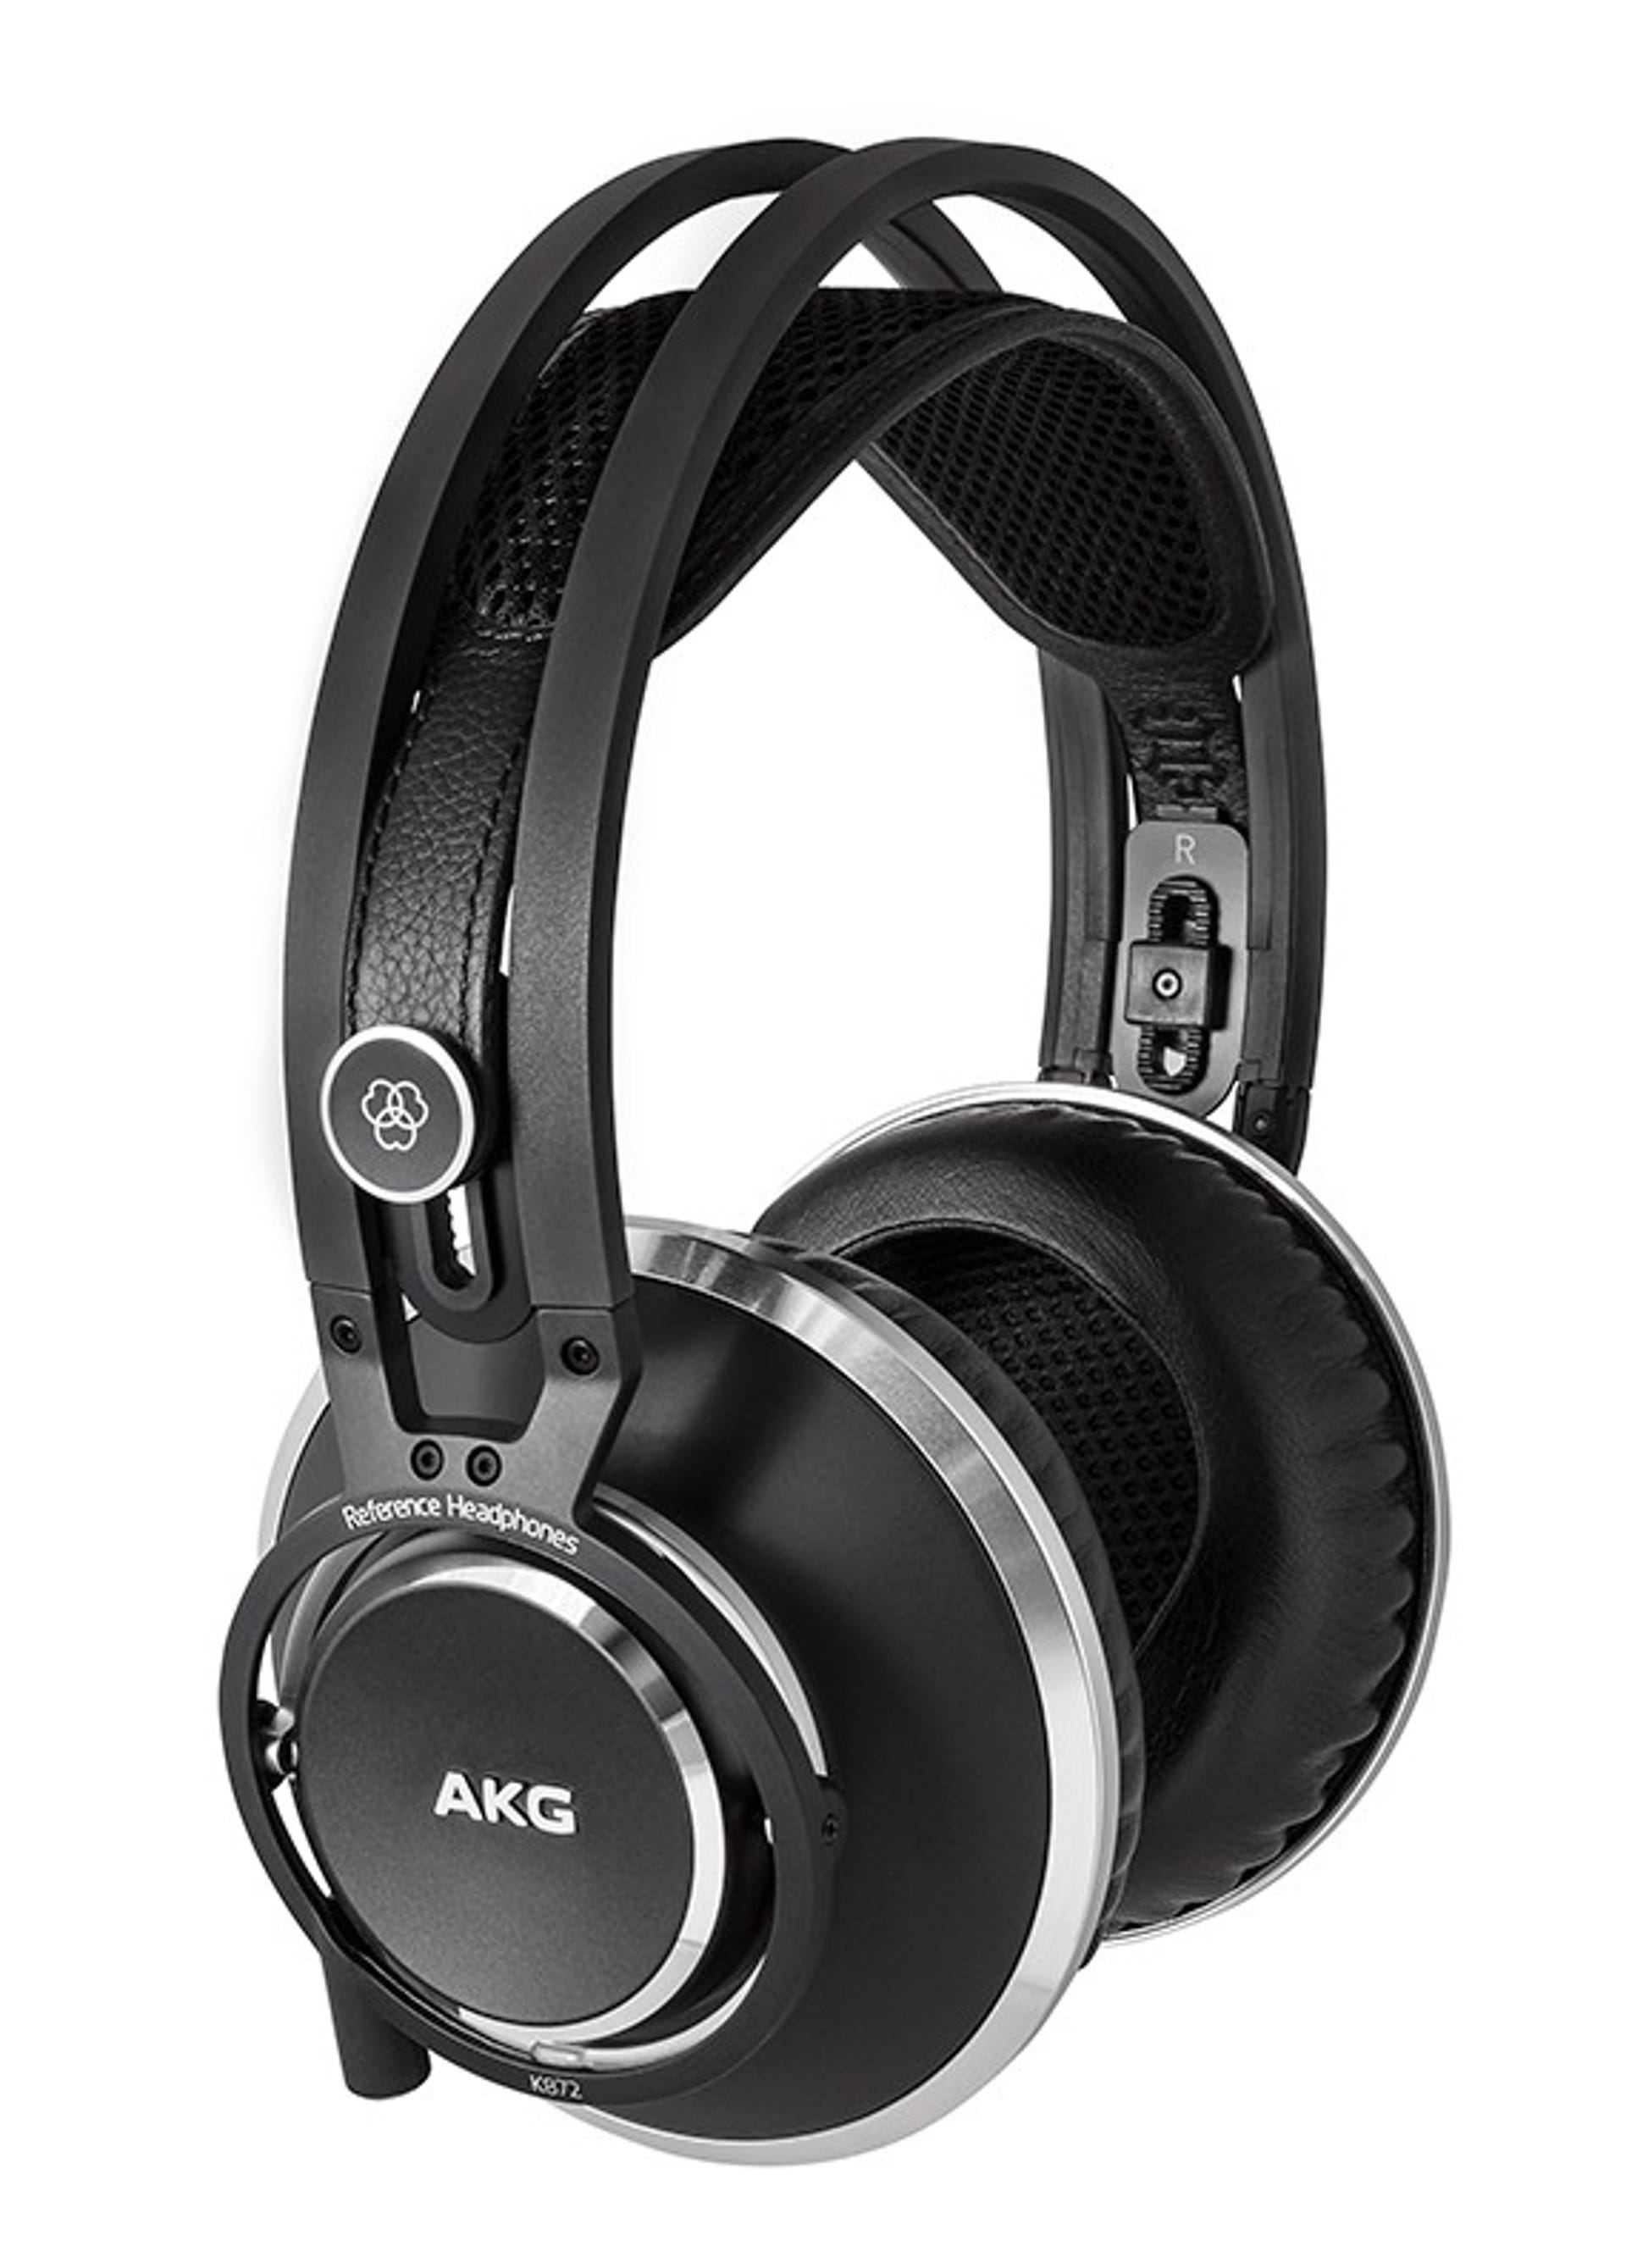 01-akg-k872-headphones.jpg